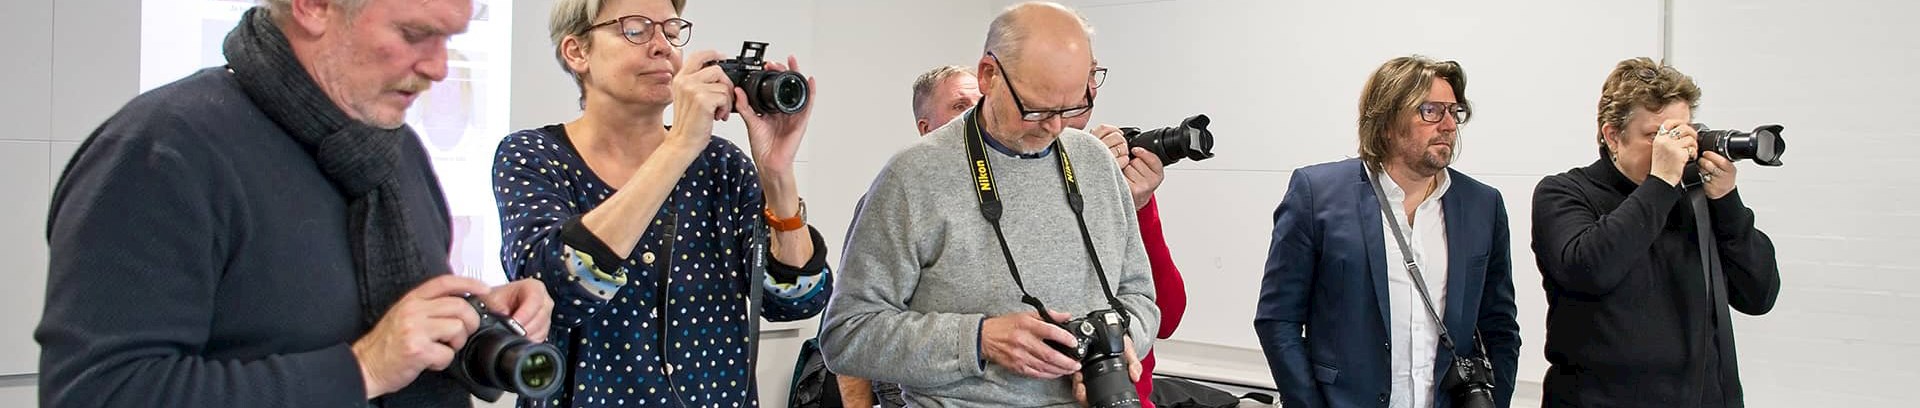 Kursister på fotokursus i FOF Aarhus, ved underviser Ole Toldbod.